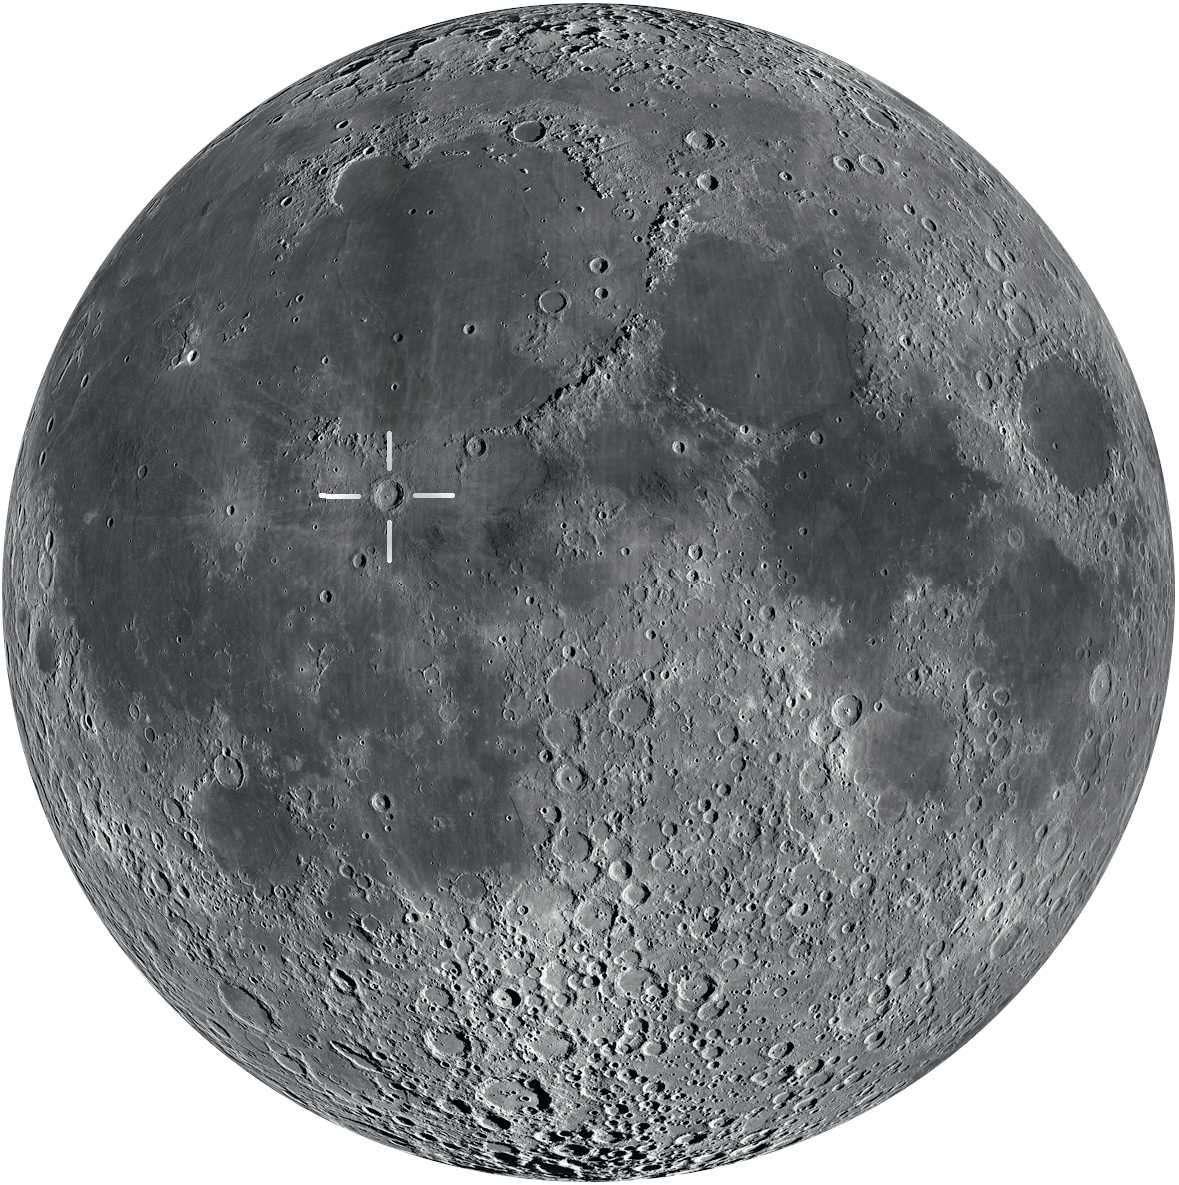 On trouve Copernic près du centre de la Lune. On peut le voir de façon optimale après le premier quartier et jusqu’à peu avant la pleine Lune.